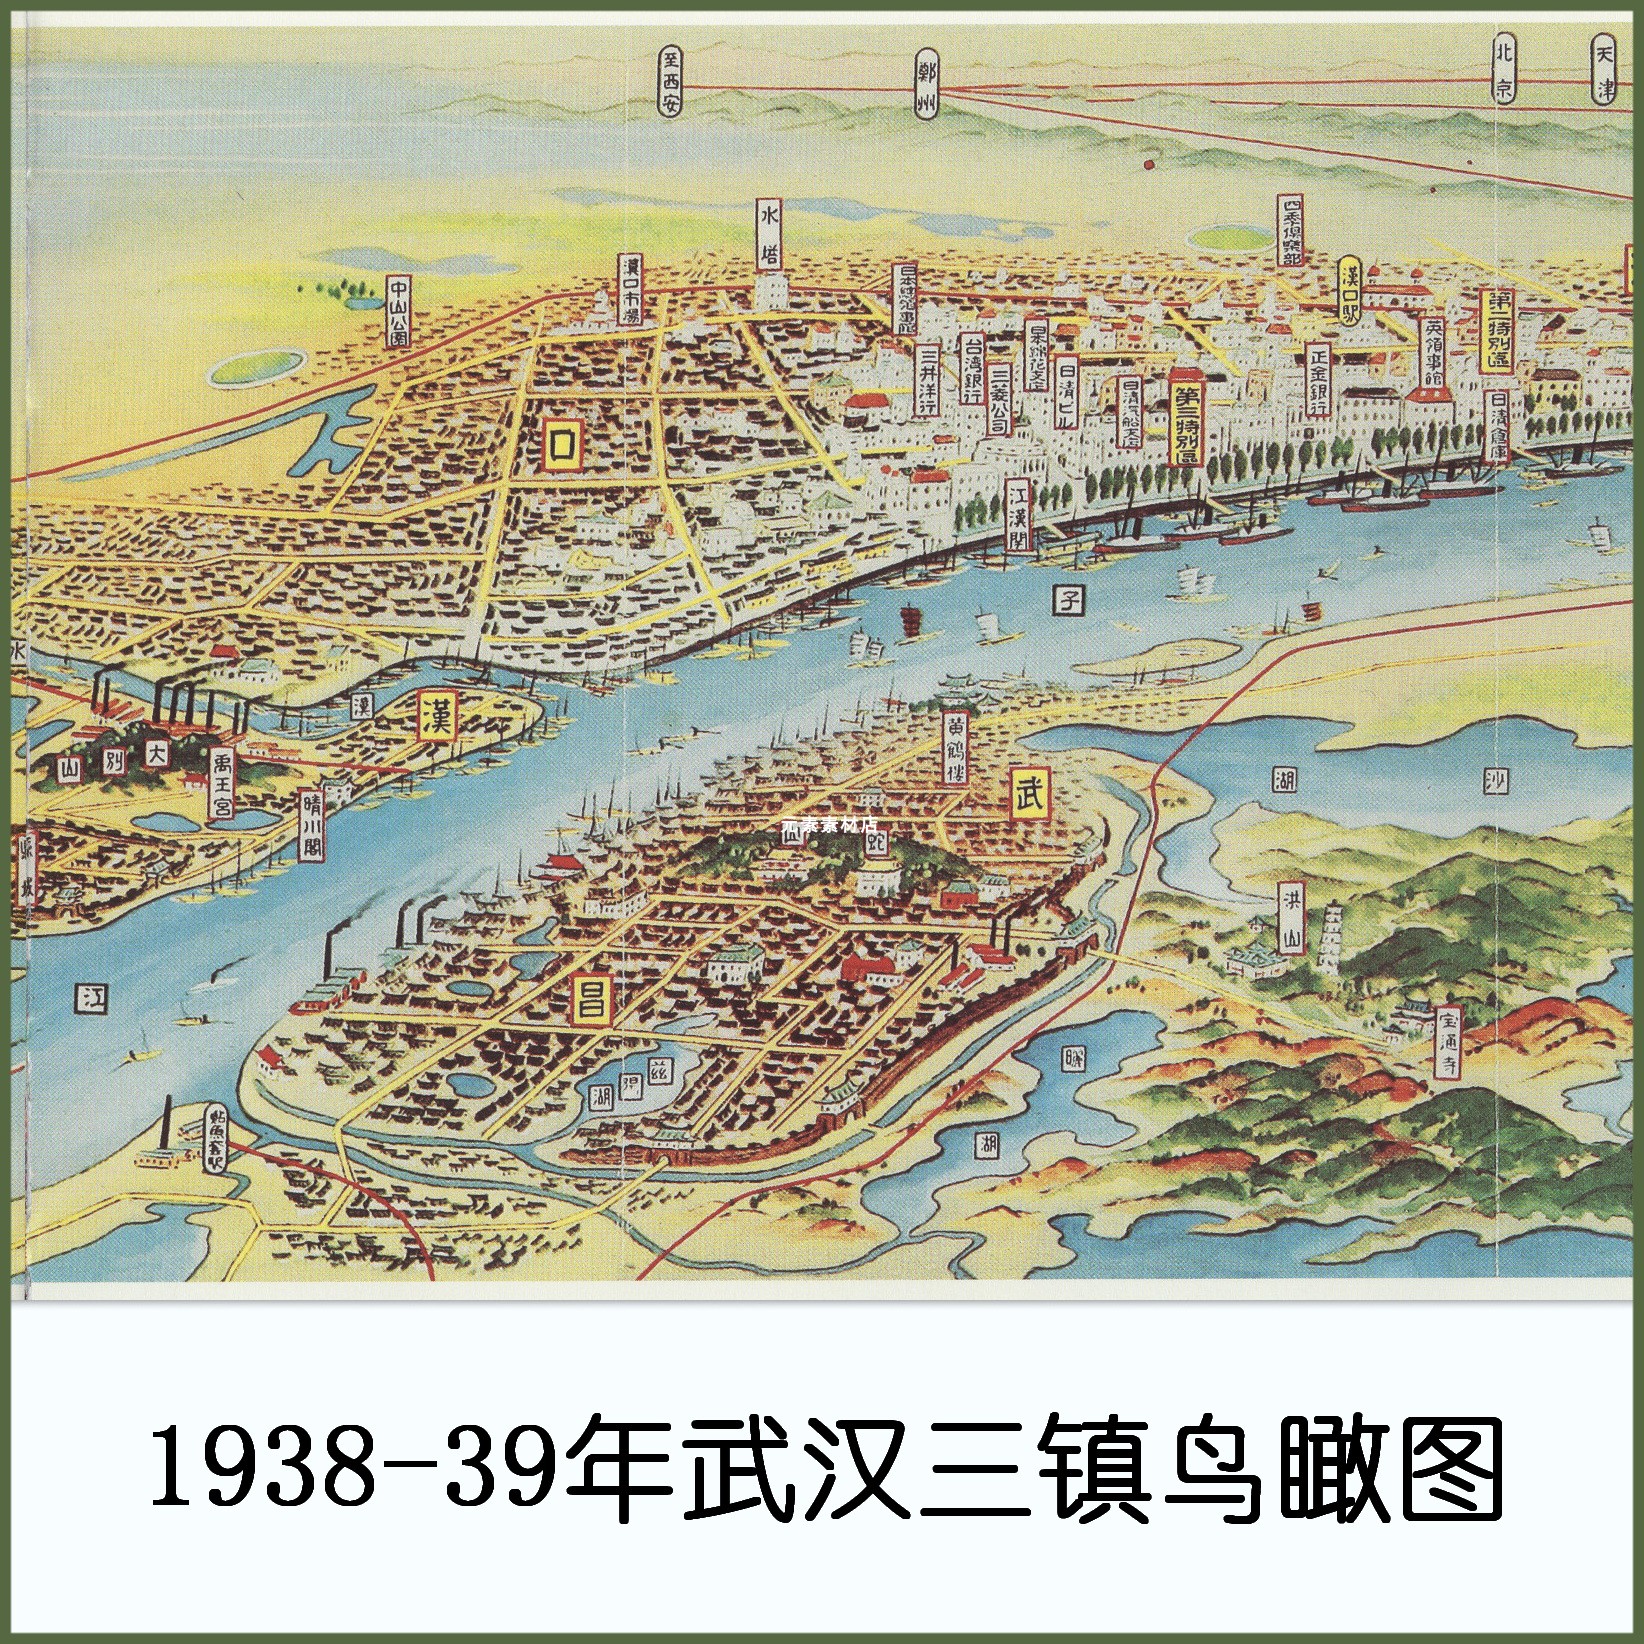 1938-39年日绘武汉三镇鸟瞰图 高清电子版老地图素材JPG格式